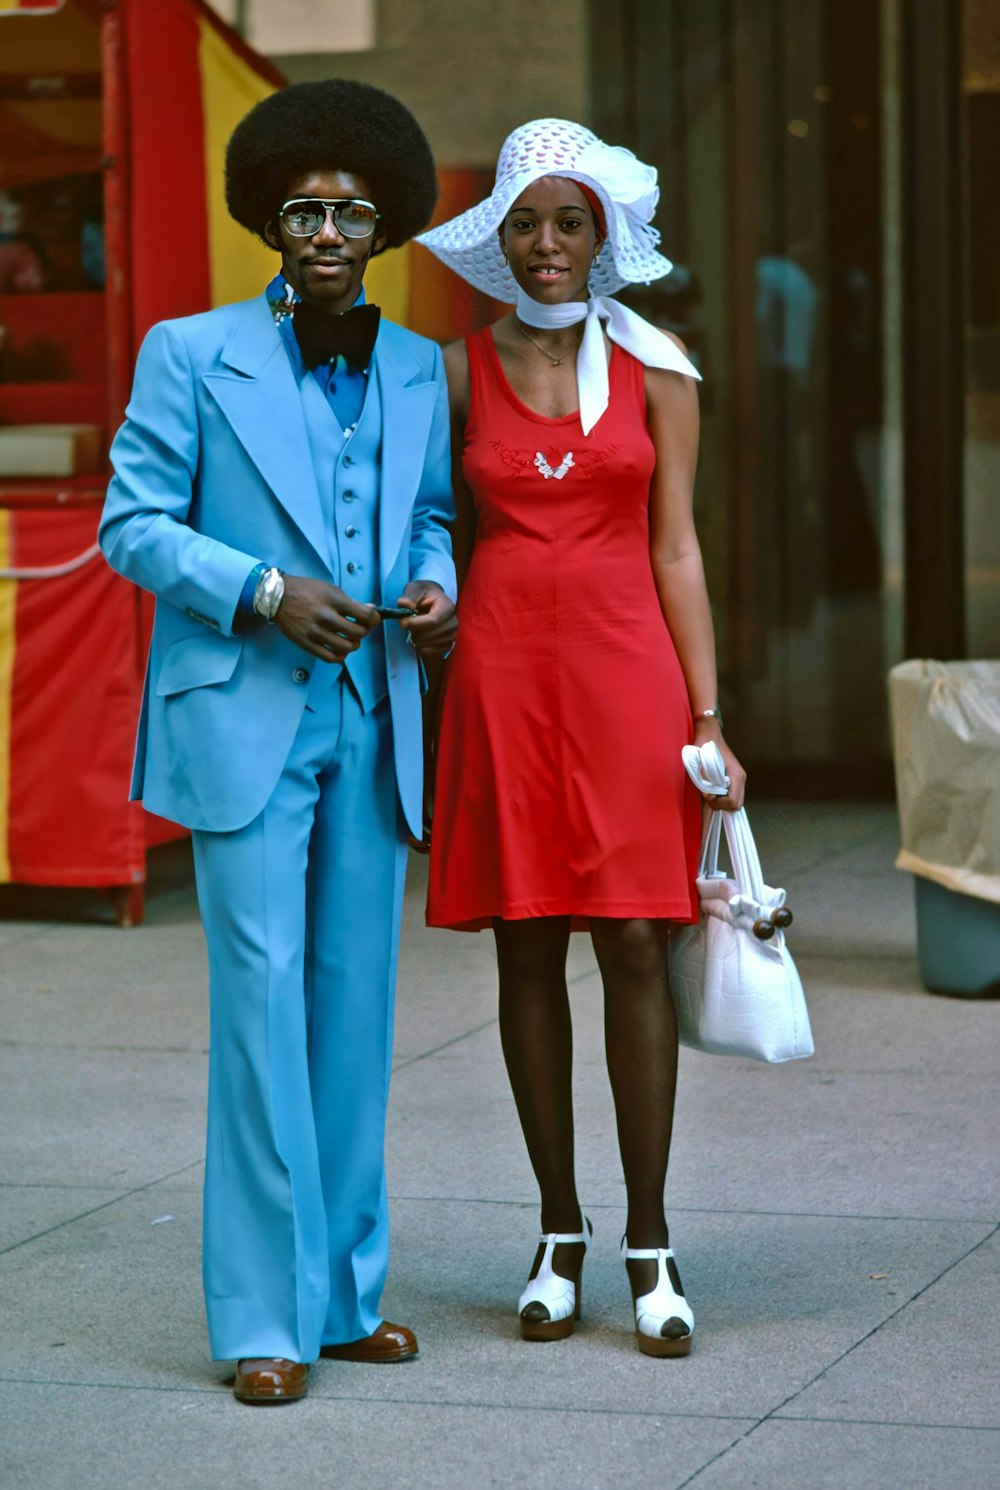 Un hombre y una mujer vestidos de azul y rojo